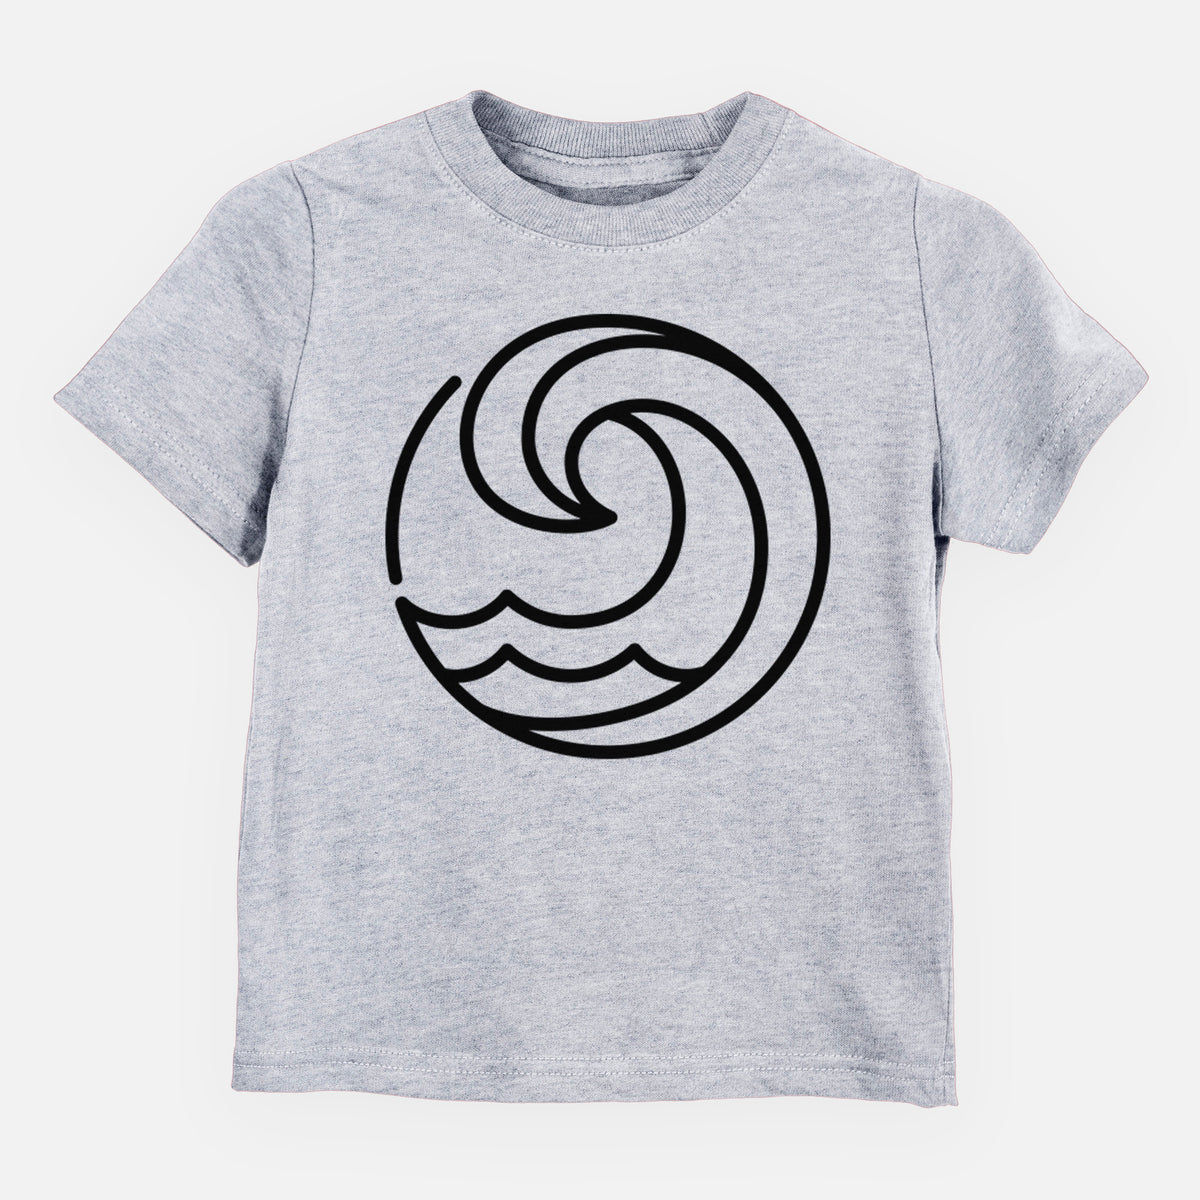 Tidal Wave Circle - Kids Shirt